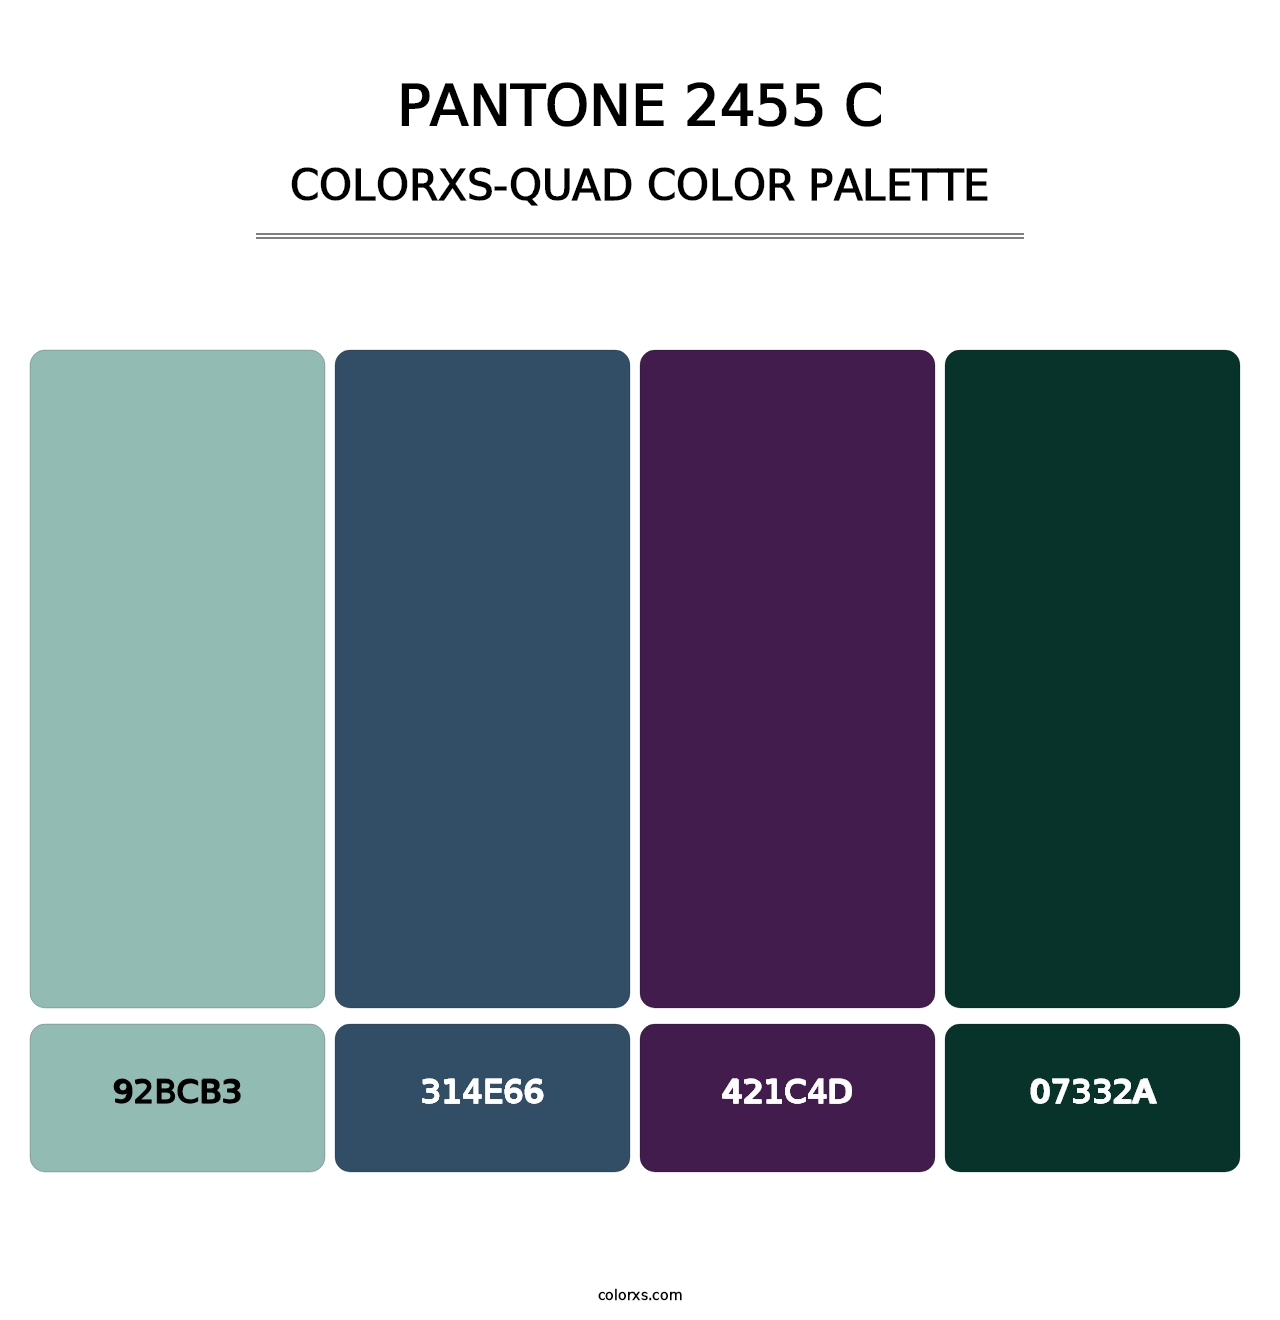 PANTONE 2455 C - Colorxs Quad Palette